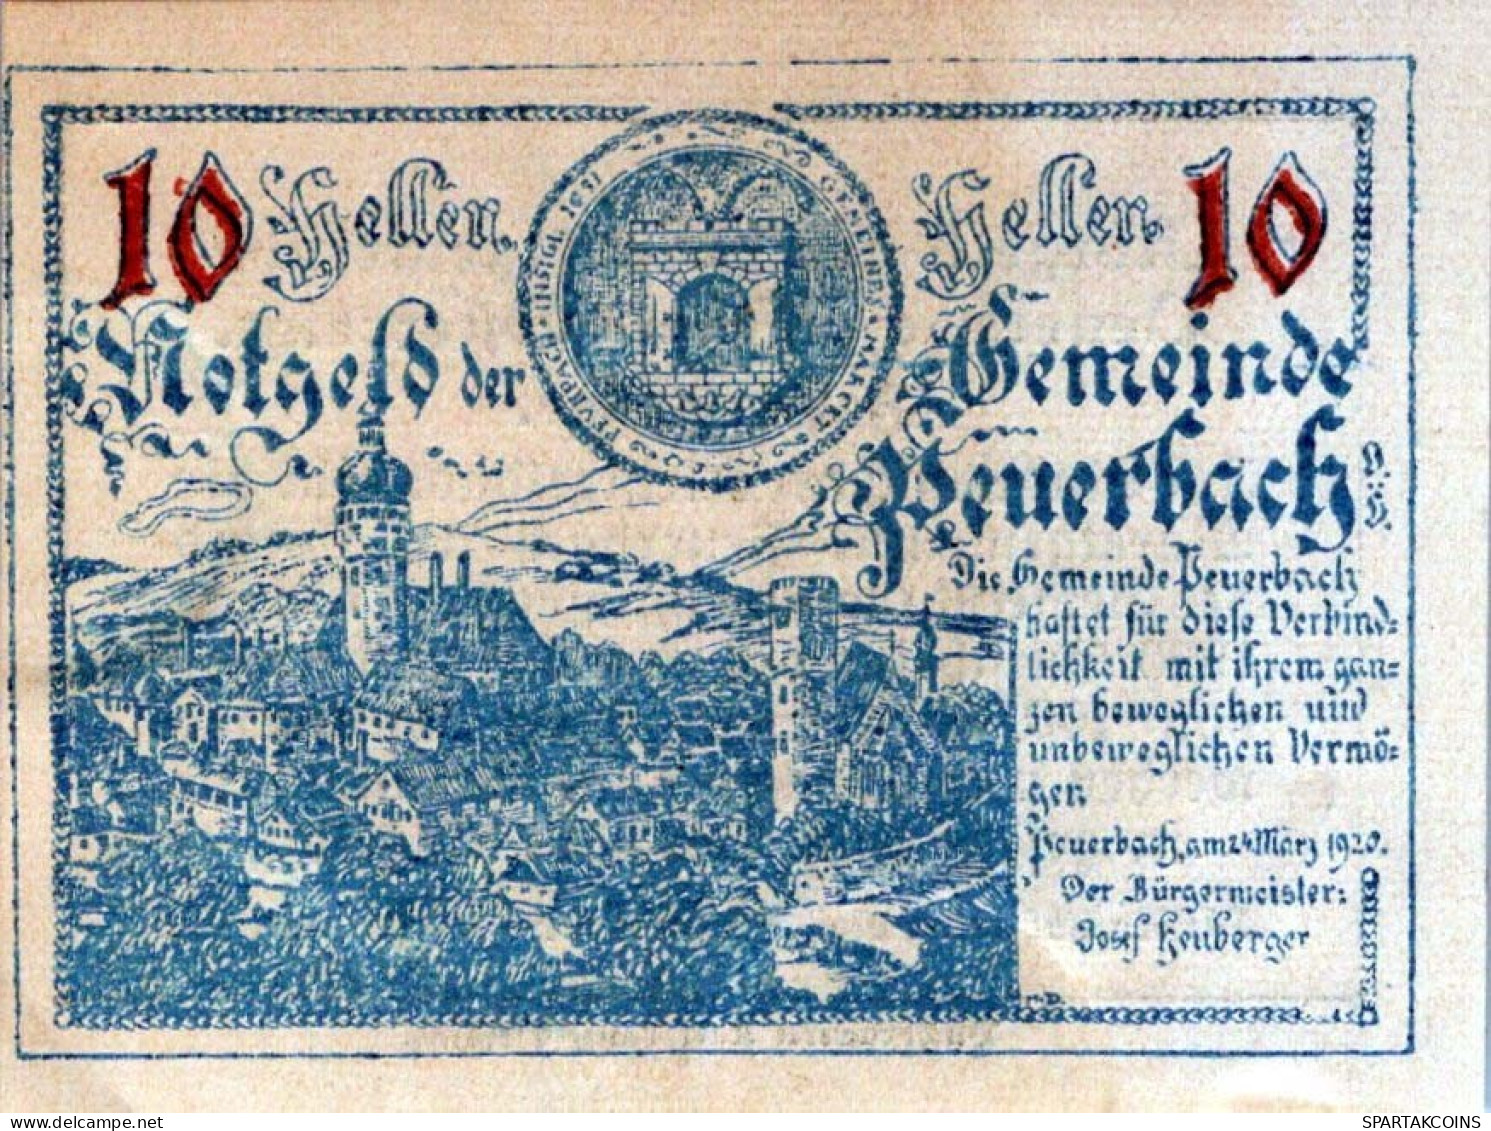 10 HELLER 1920 Stadt PEUERBACH Oberösterreich Österreich Notgeld Banknote #PE292 - [11] Local Banknote Issues